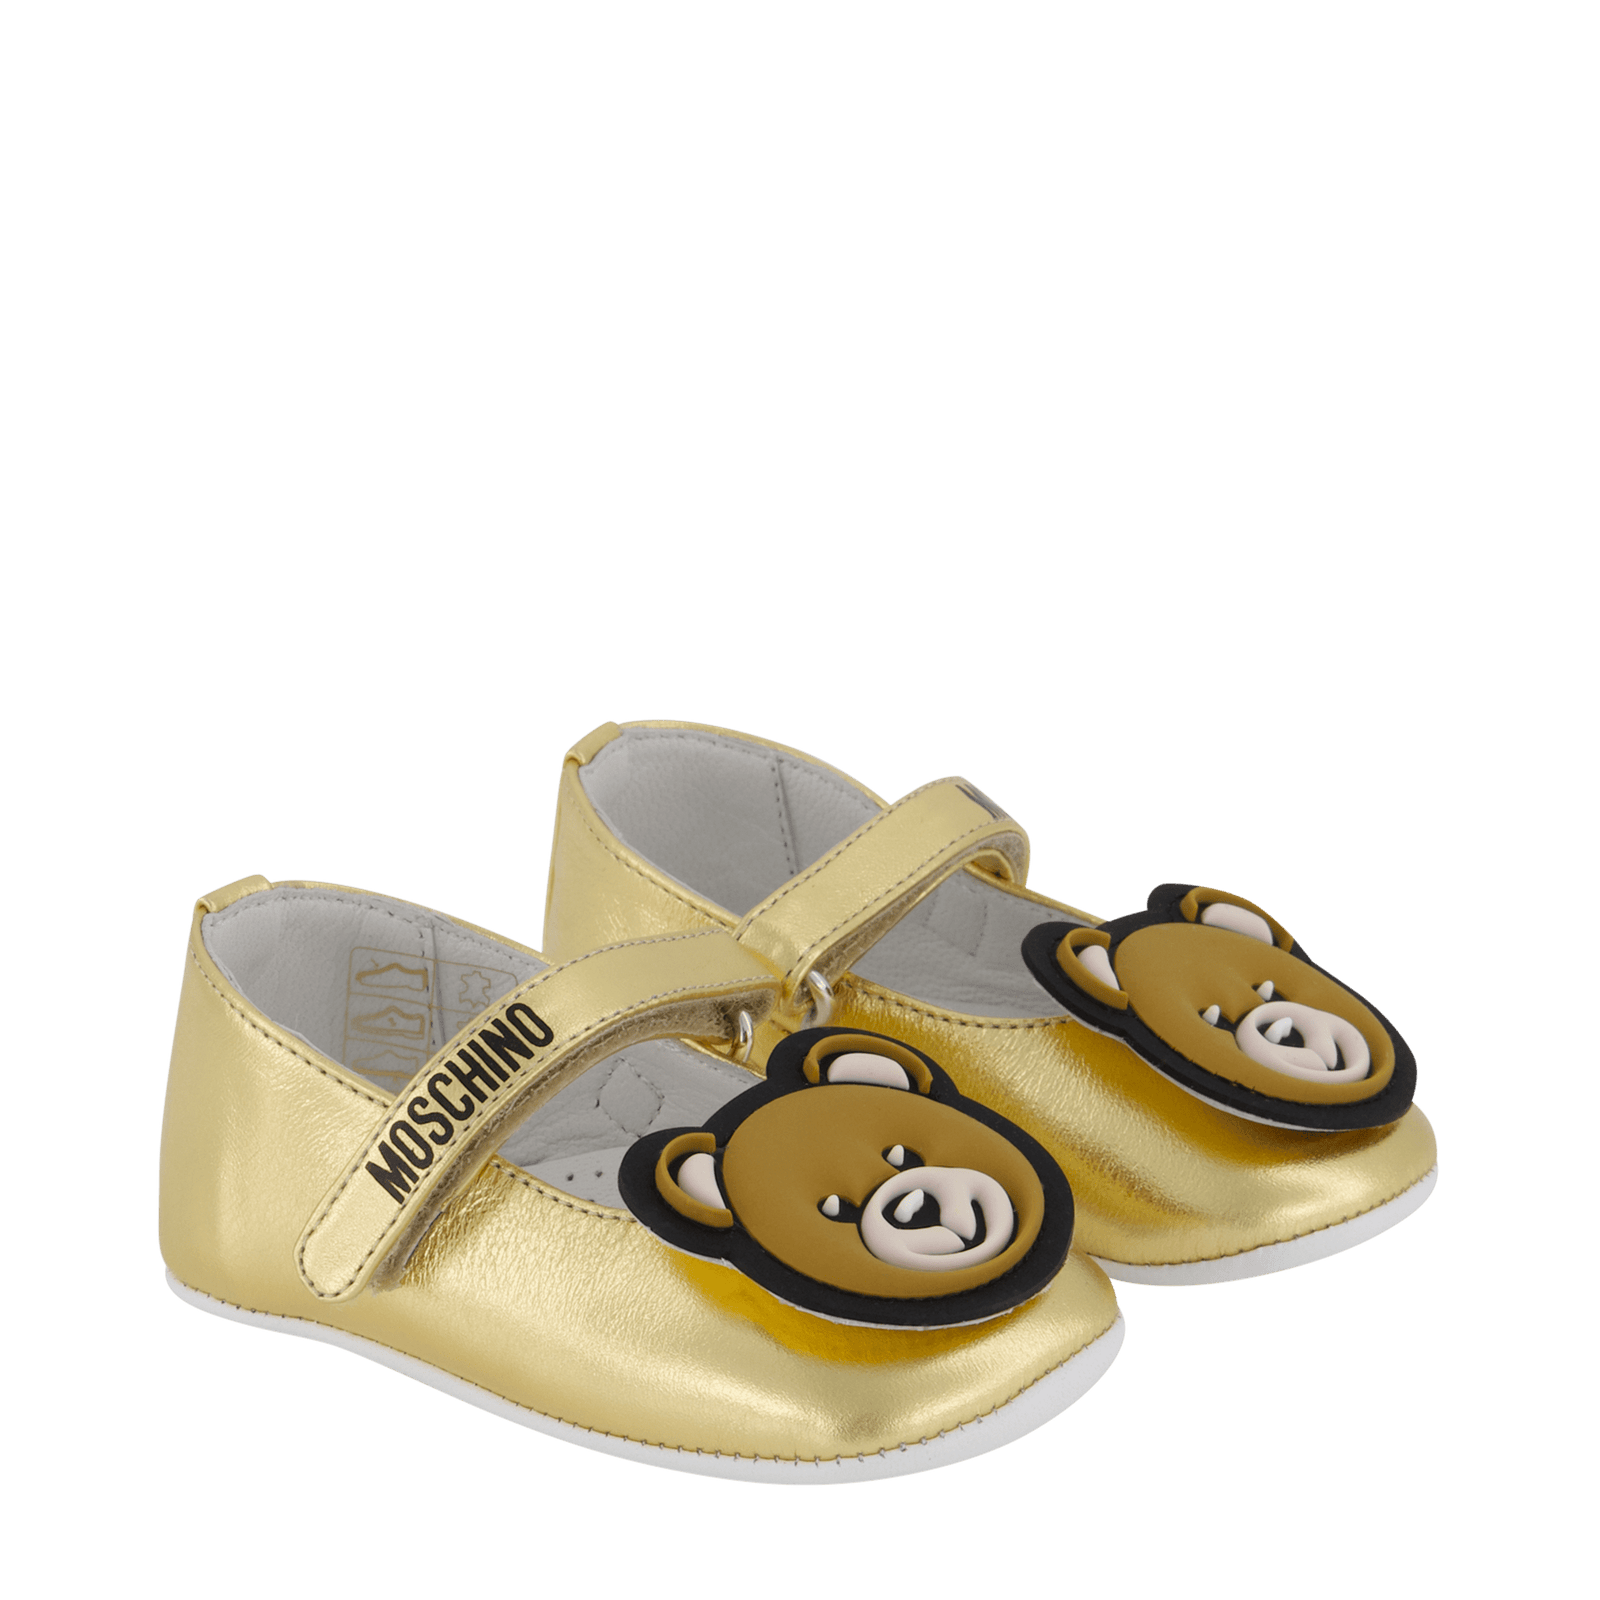 Moschino Baby Meisjes Schoenen Goud 16